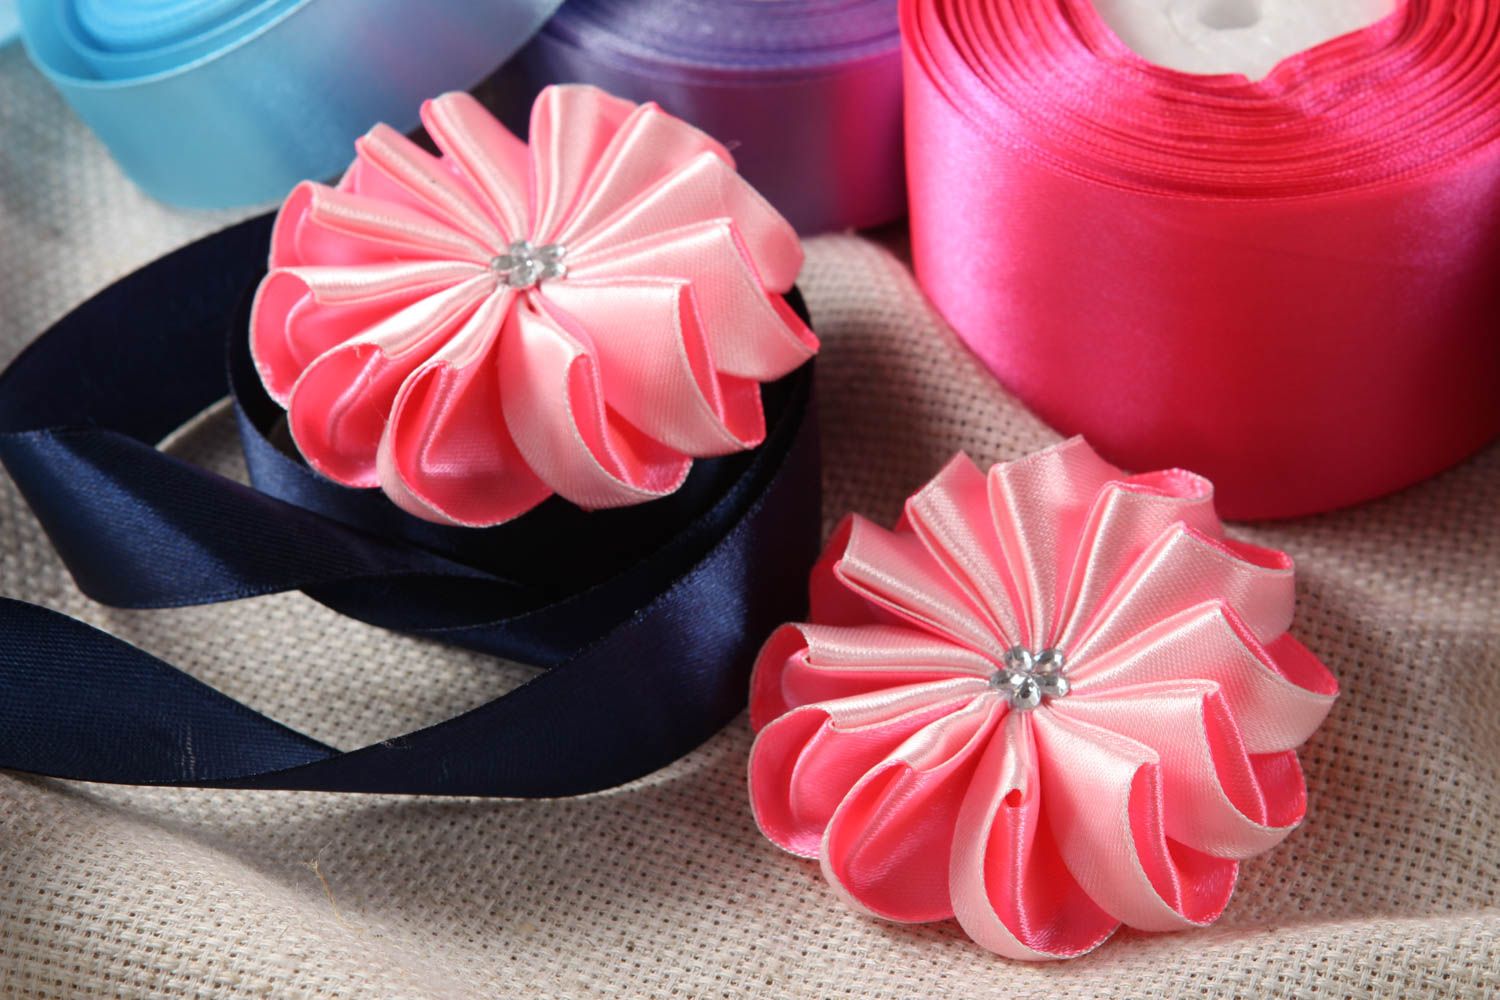 Цветы канзаши заготовки для заколок фурнитура для бижутерии розовые 2 шт фото 1